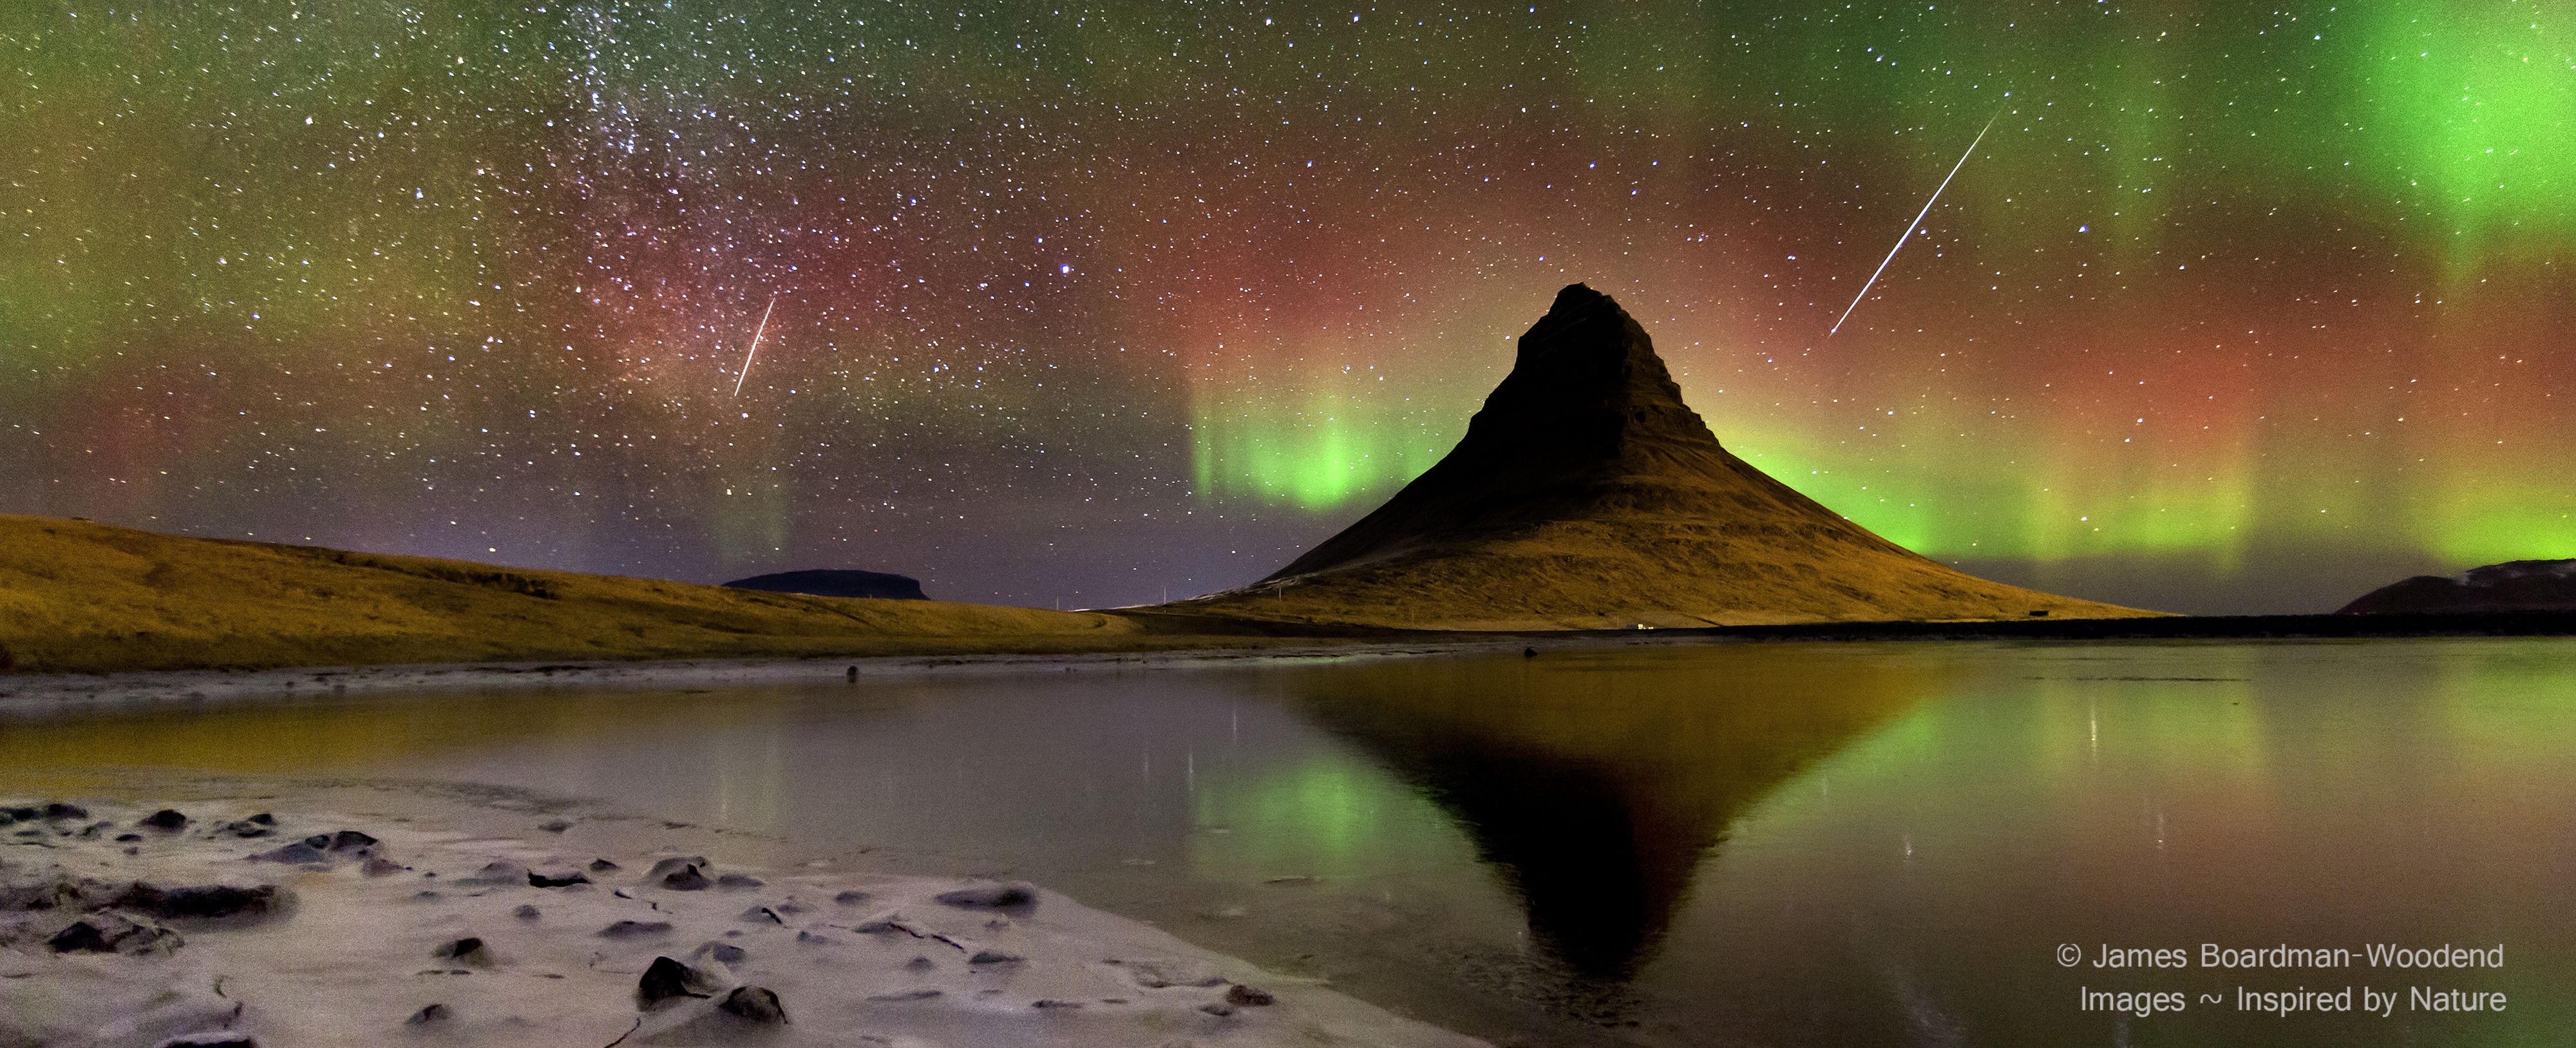 İzlanda Üzerinde Meteorlar ve Auroralar